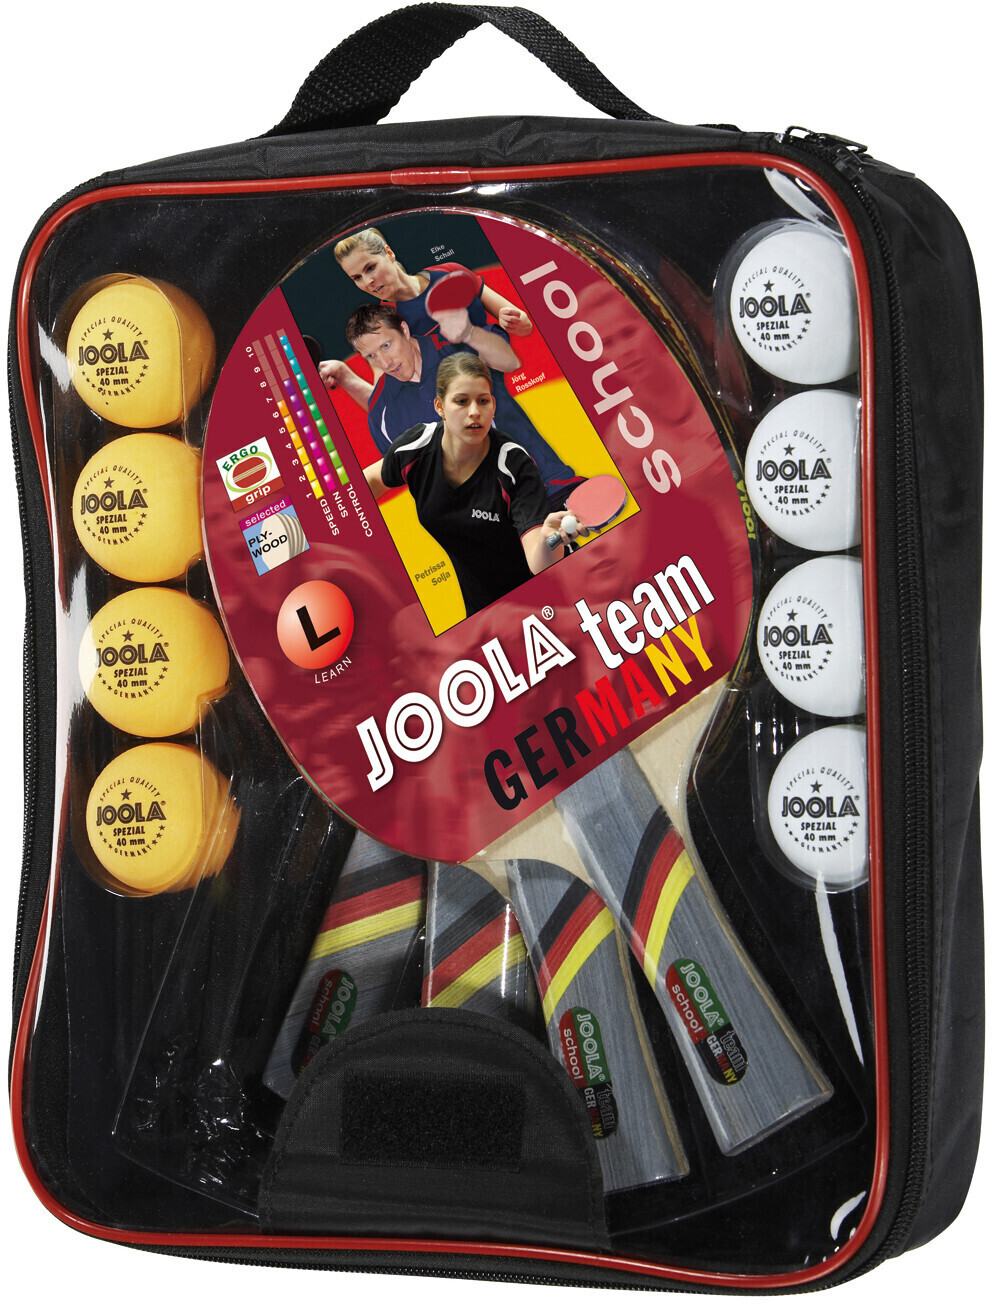 ab Joola - 20,99 € Germany Team bei Tischtennis-Set | School Preisvergleich -